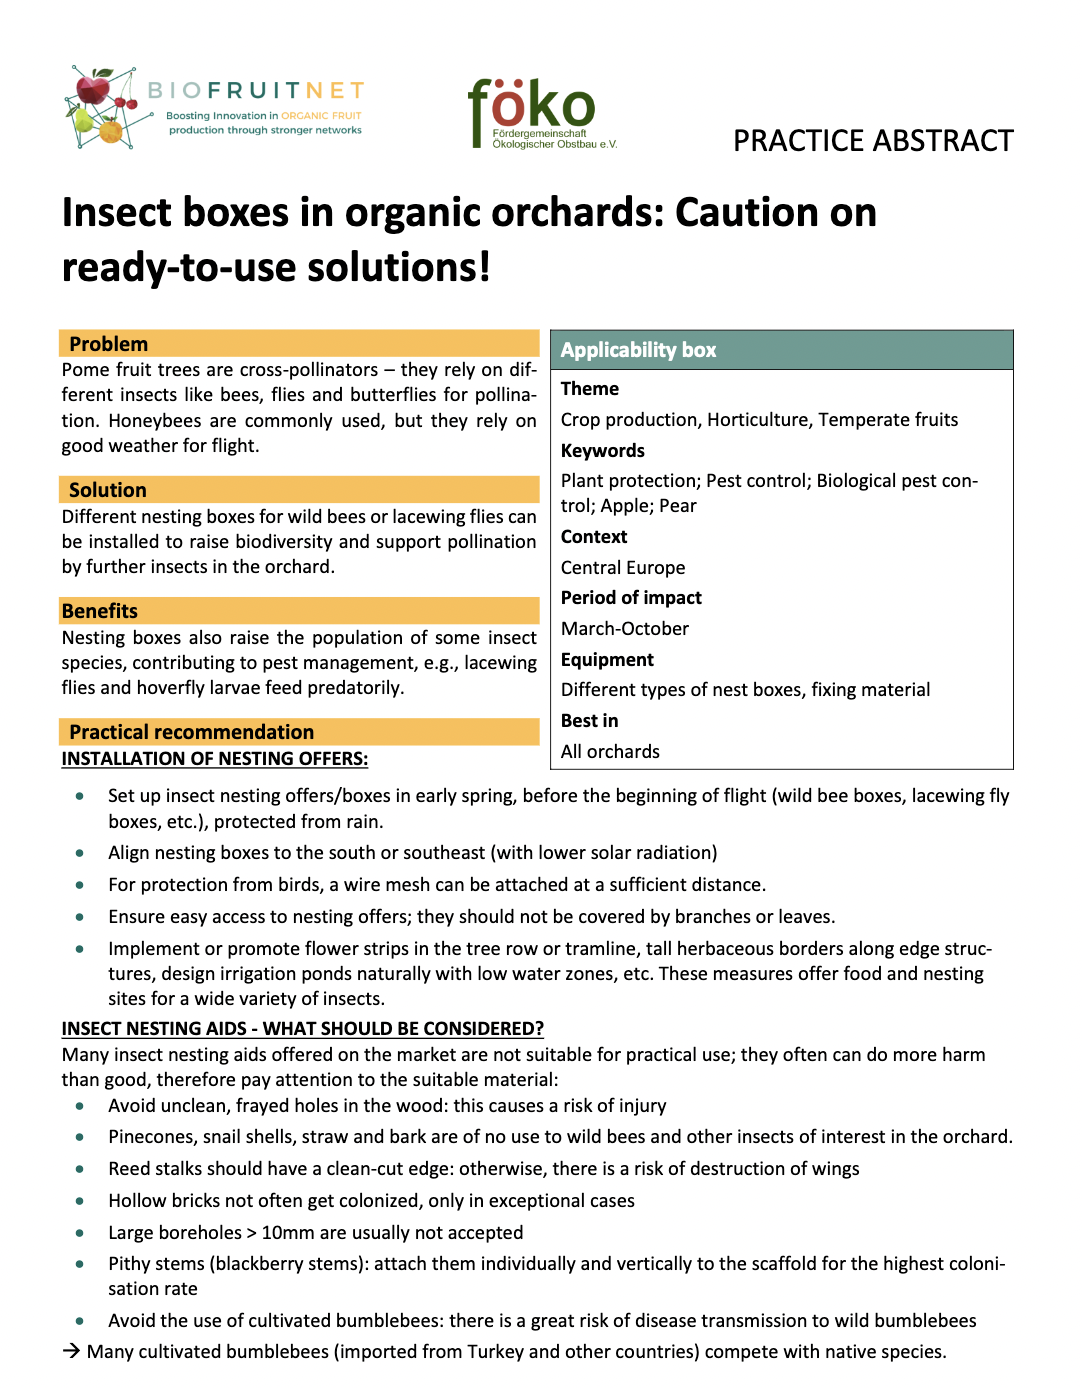 Budki na owady w sadach ekologicznych: Uwaga na gotowe rozwiązania! (Streszczenie praktyki BIOFRUITNET)